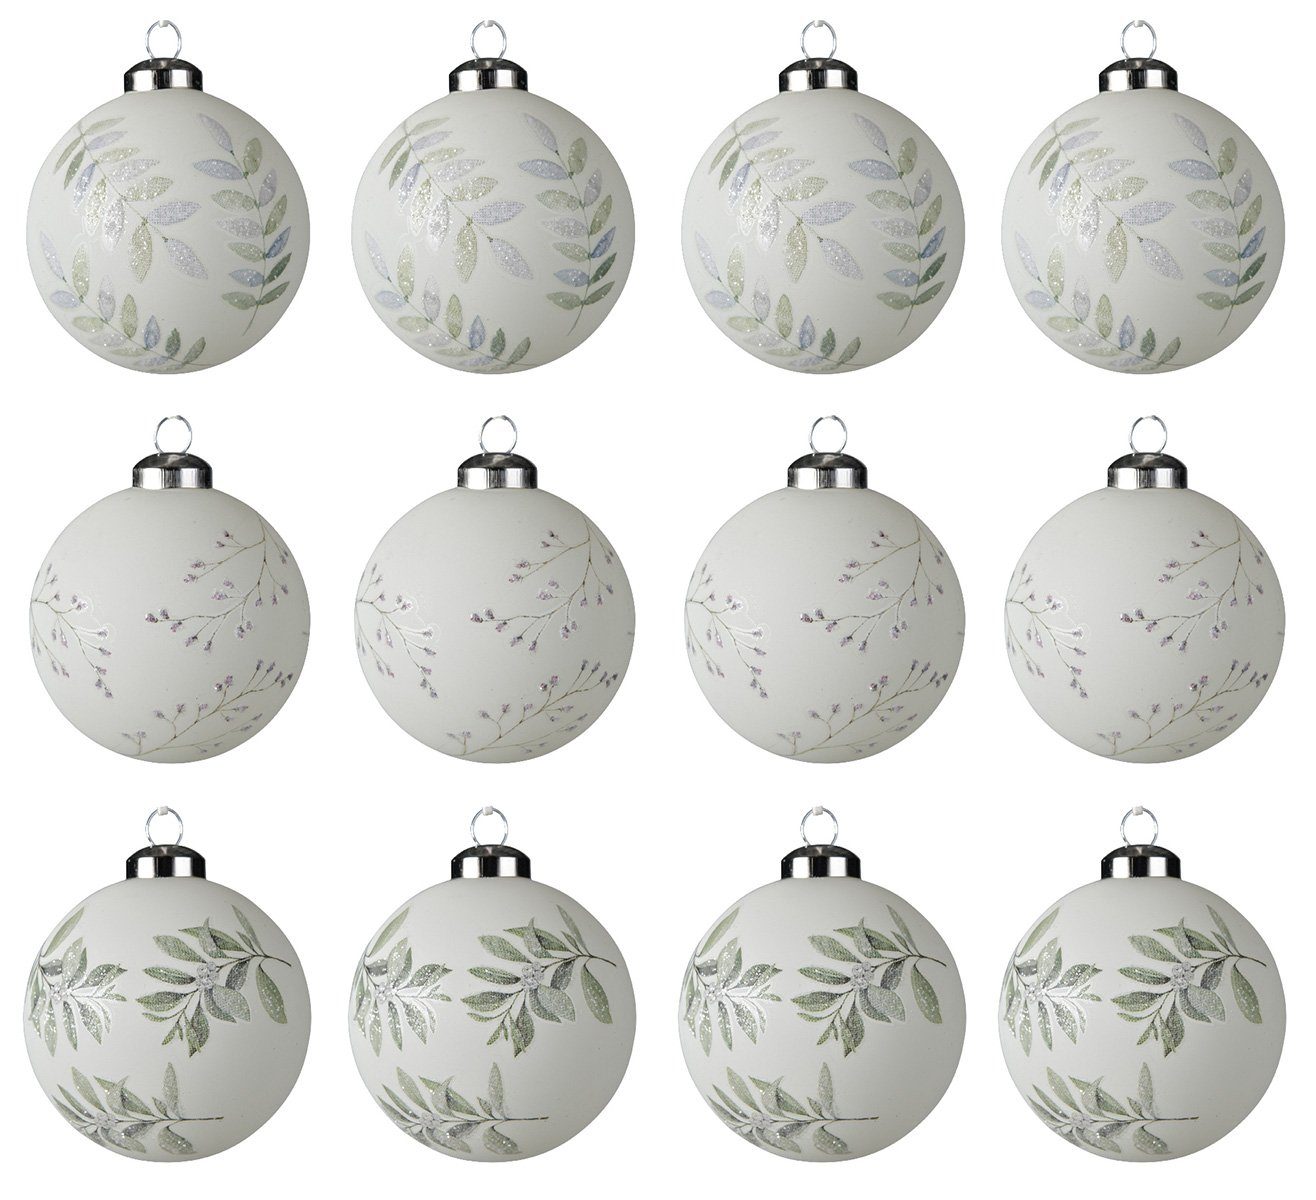 Decoris season decorations Weihnachtsbaumkugel, Weihnachtskugeln Glas 8cm Zweige und Blätter 12er Set weiß / grün | Weihnachtskugeln